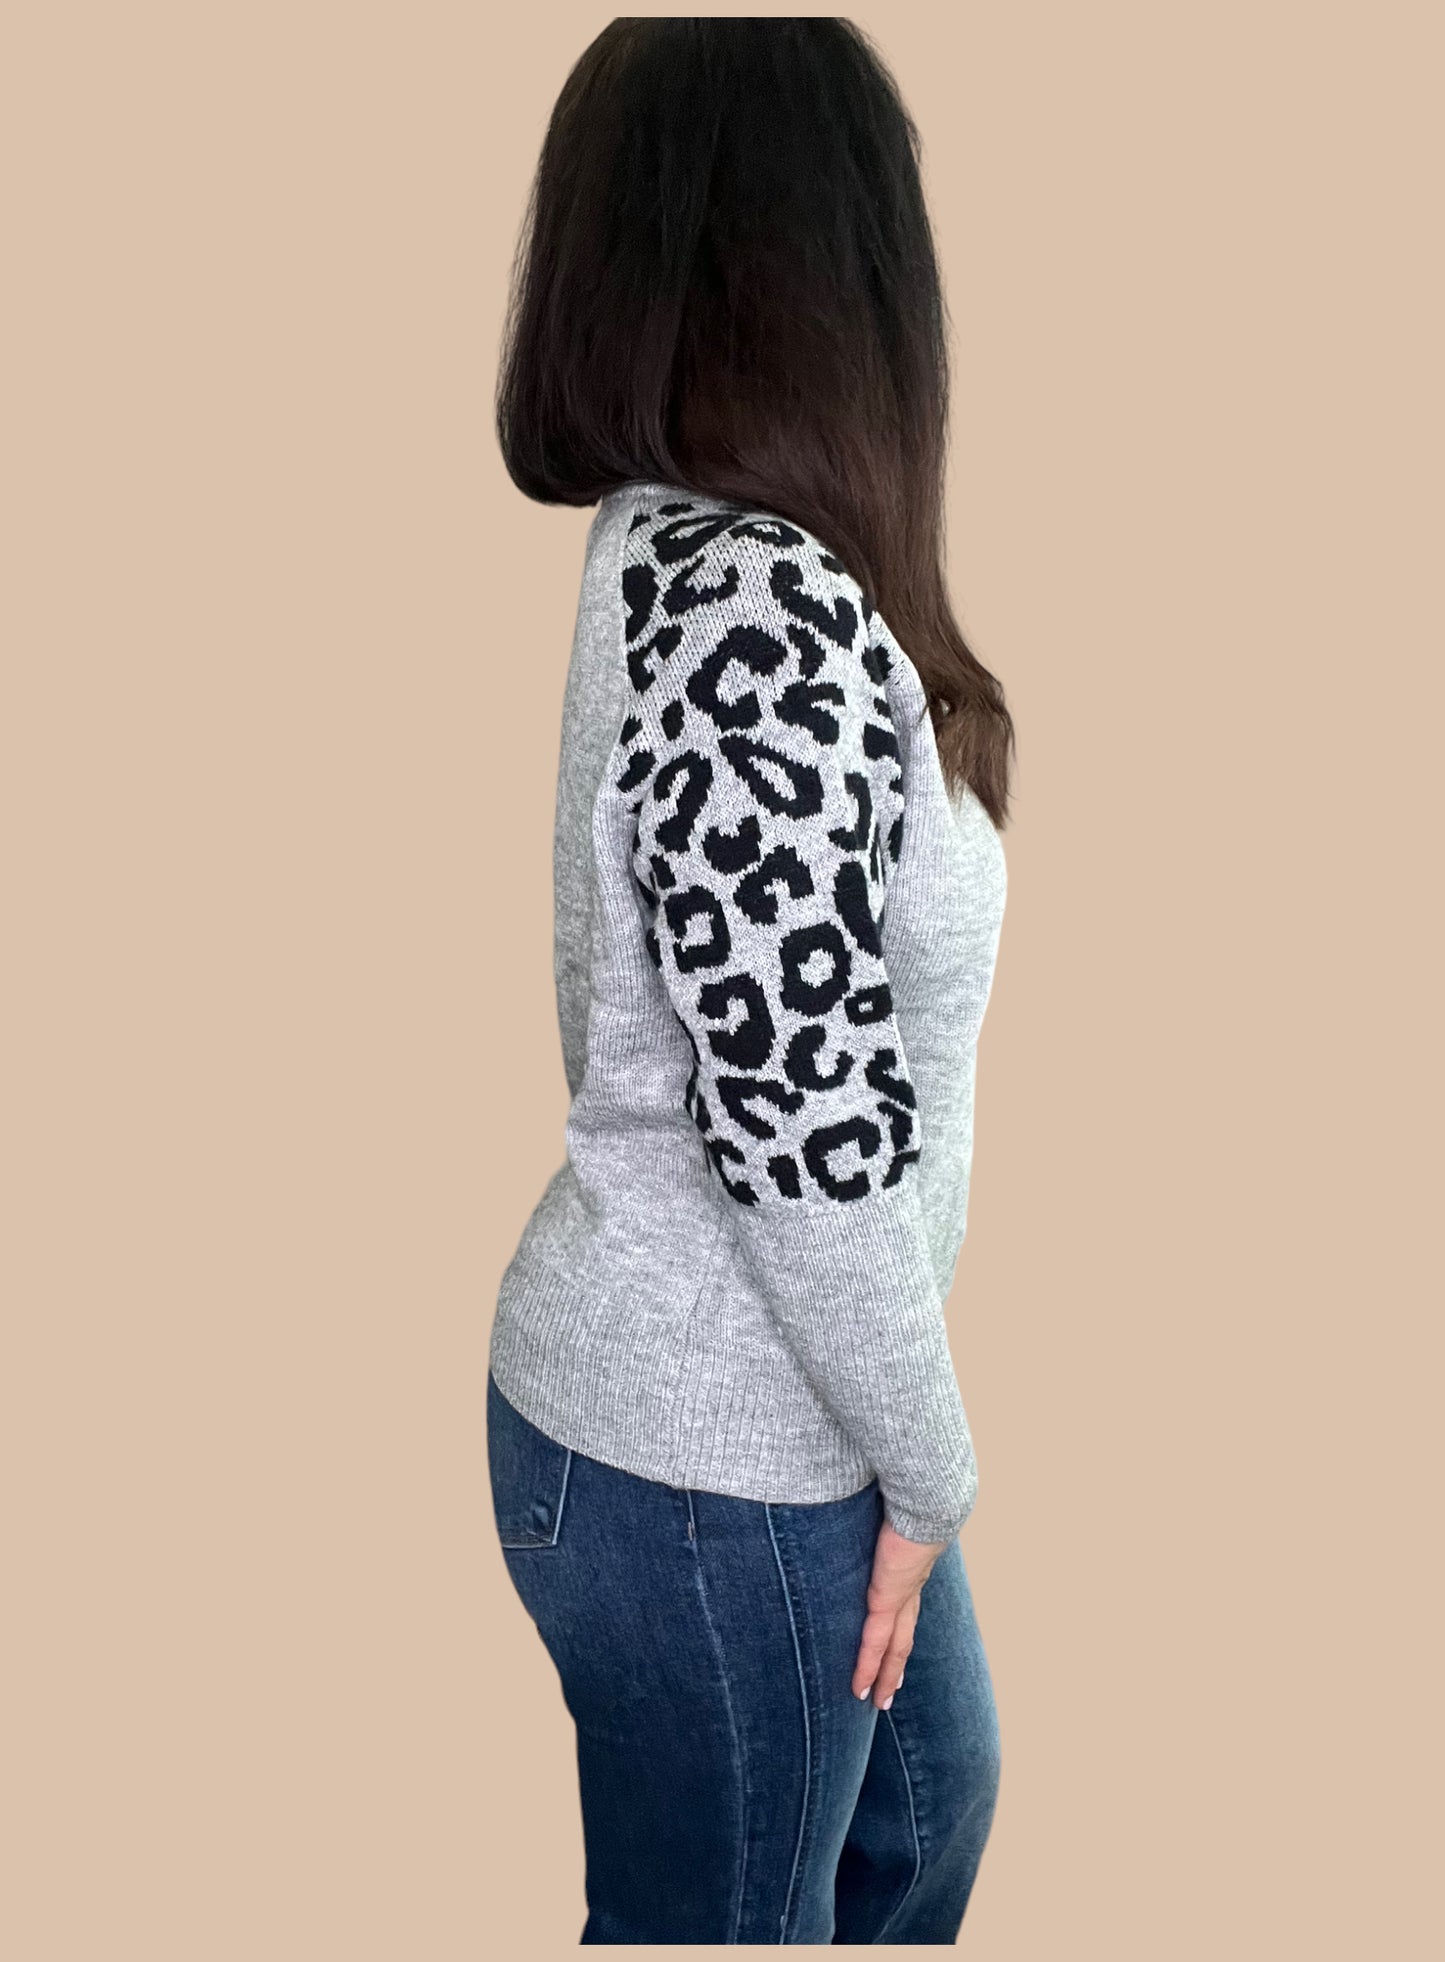 Leopard Print Lightweight Sweater